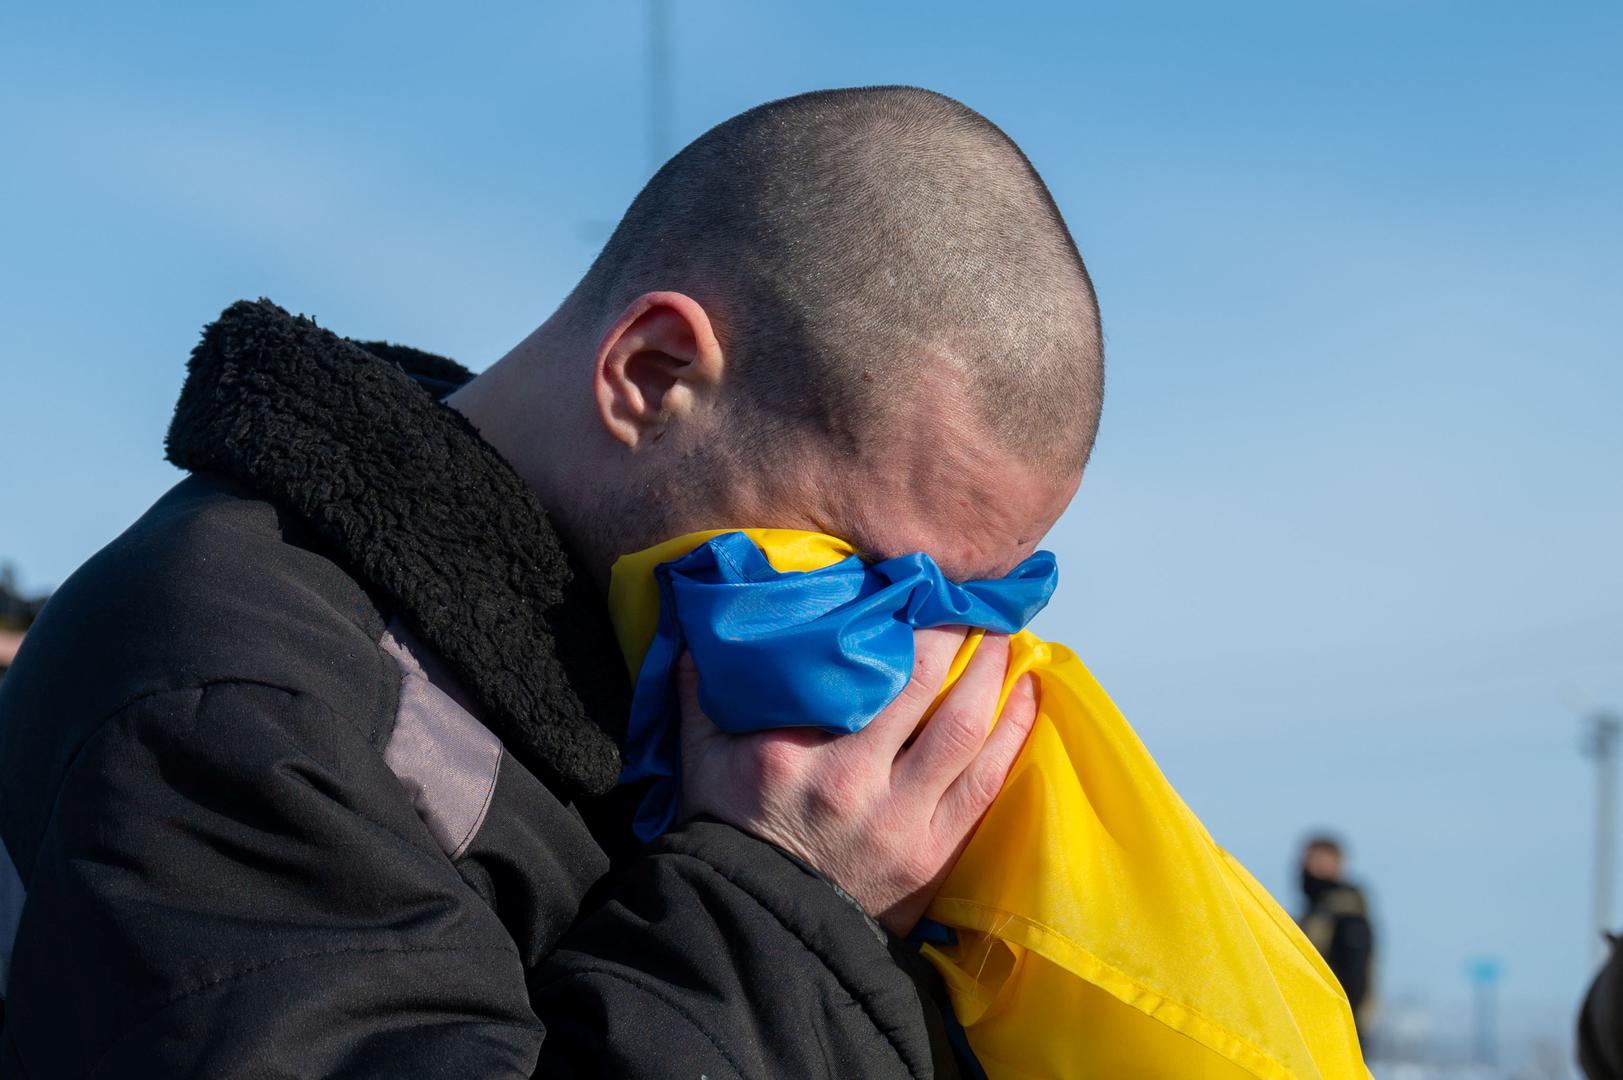 Ukupno 207 zarobljenih ukrajinskih vojnika vratilo se kući nakon dogovora s Rusijom o razmjeni zarobljenika, rekao je u srijedu predsjednik Volodimir Zelenskij.
